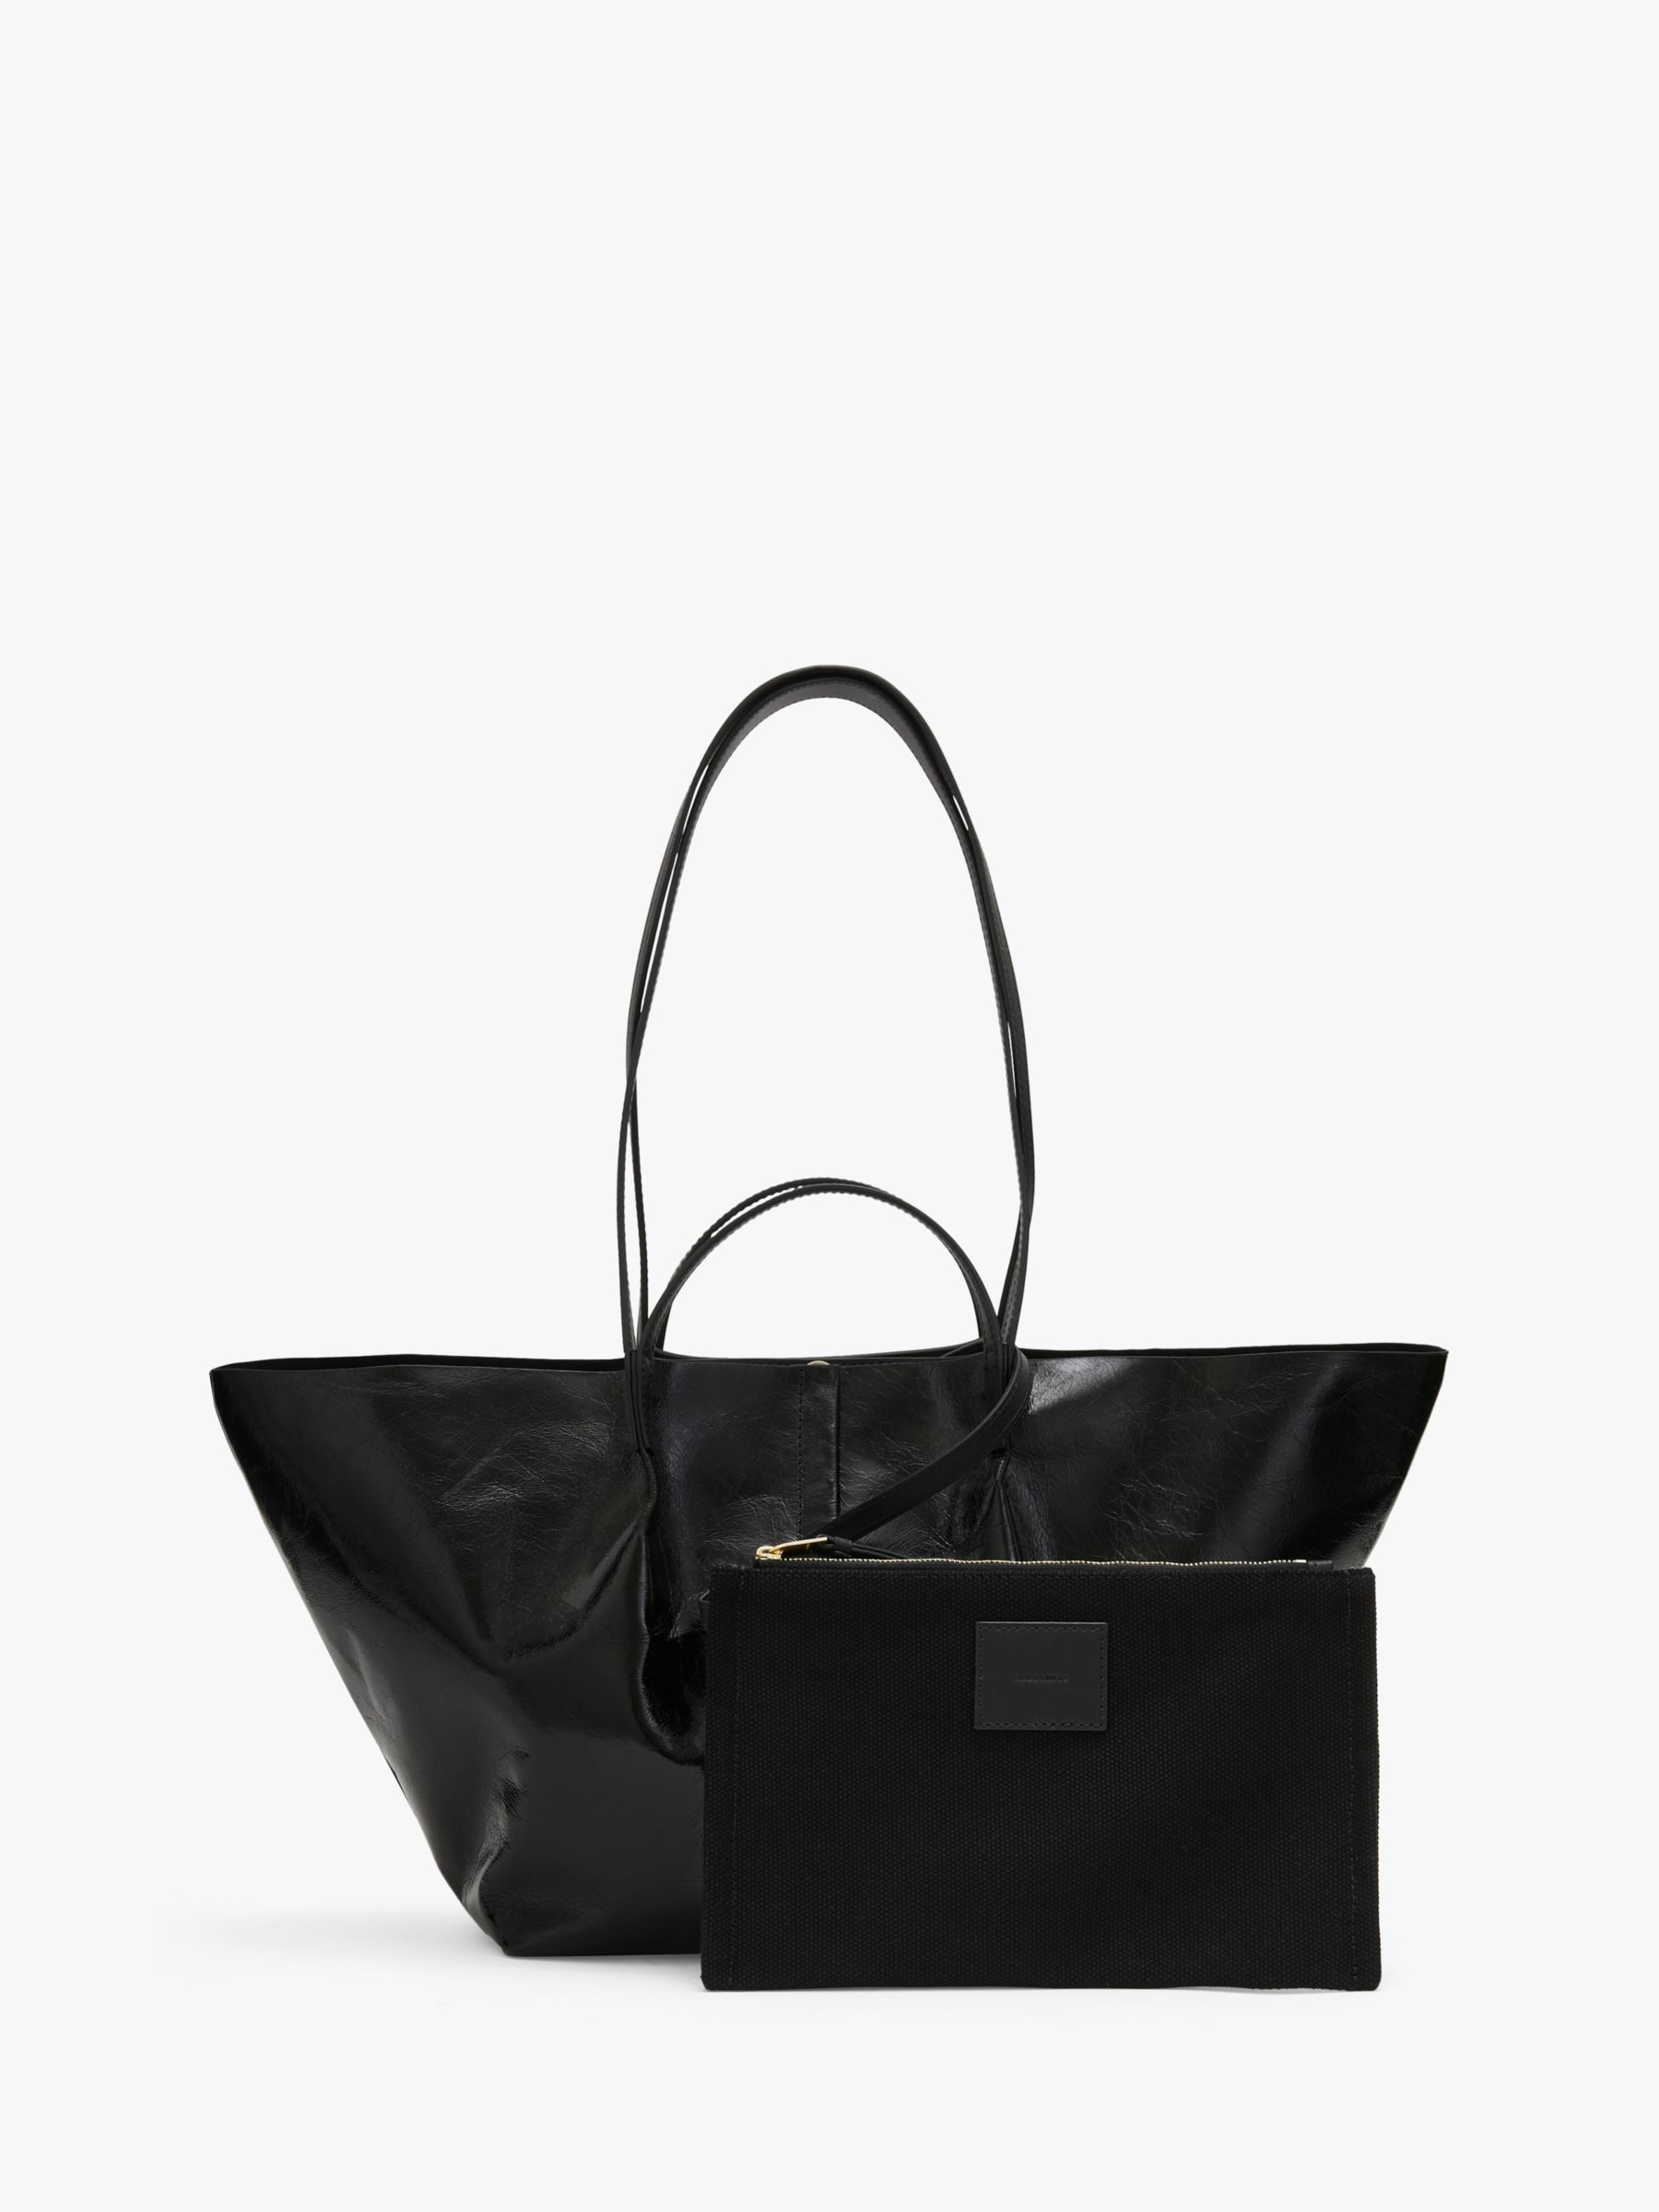 AllSaints Odette Leather Tote Bag, Black at John Lewis & Partners